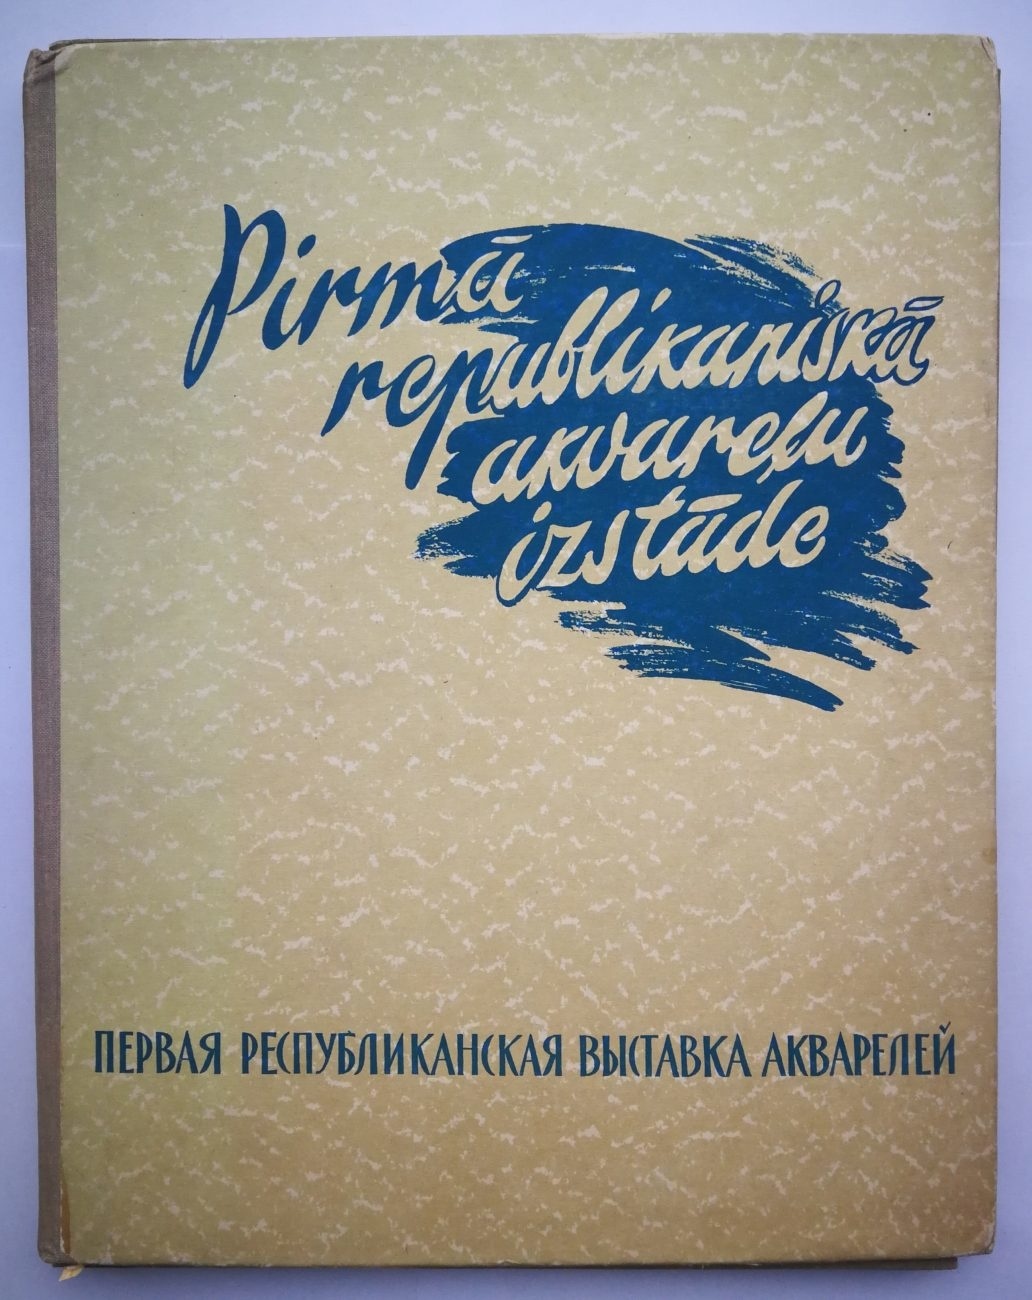 Первая республиканская выставка акварелей (Рига, 1959). Комплект репродукций.